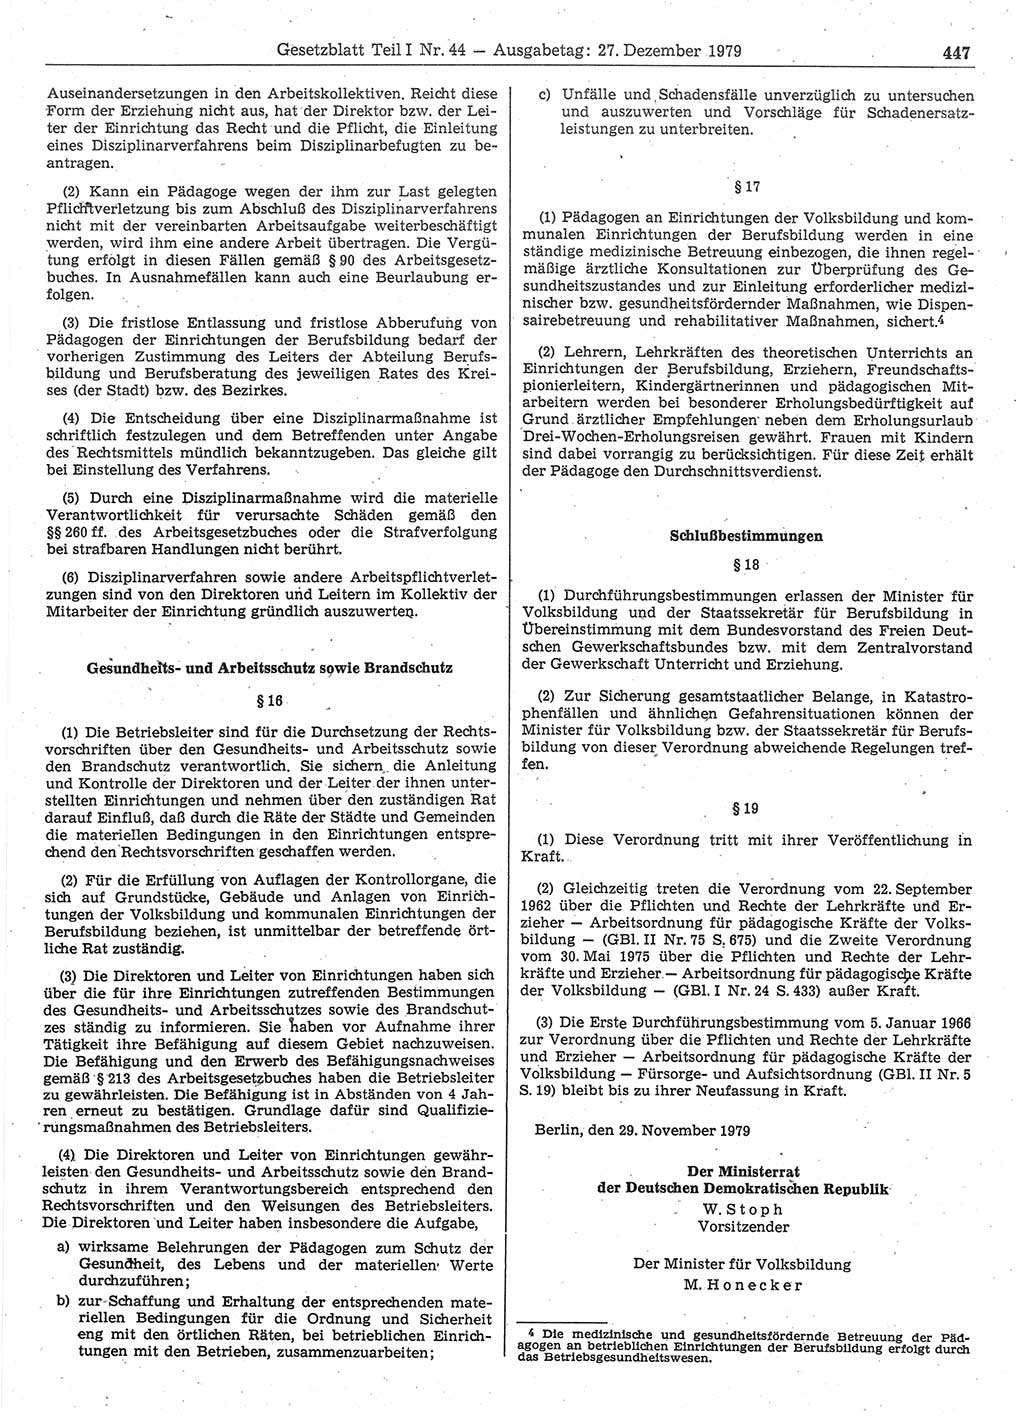 Gesetzblatt (GBl.) der Deutschen Demokratischen Republik (DDR) Teil Ⅰ 1979, Seite 447 (GBl. DDR Ⅰ 1979, S. 447)